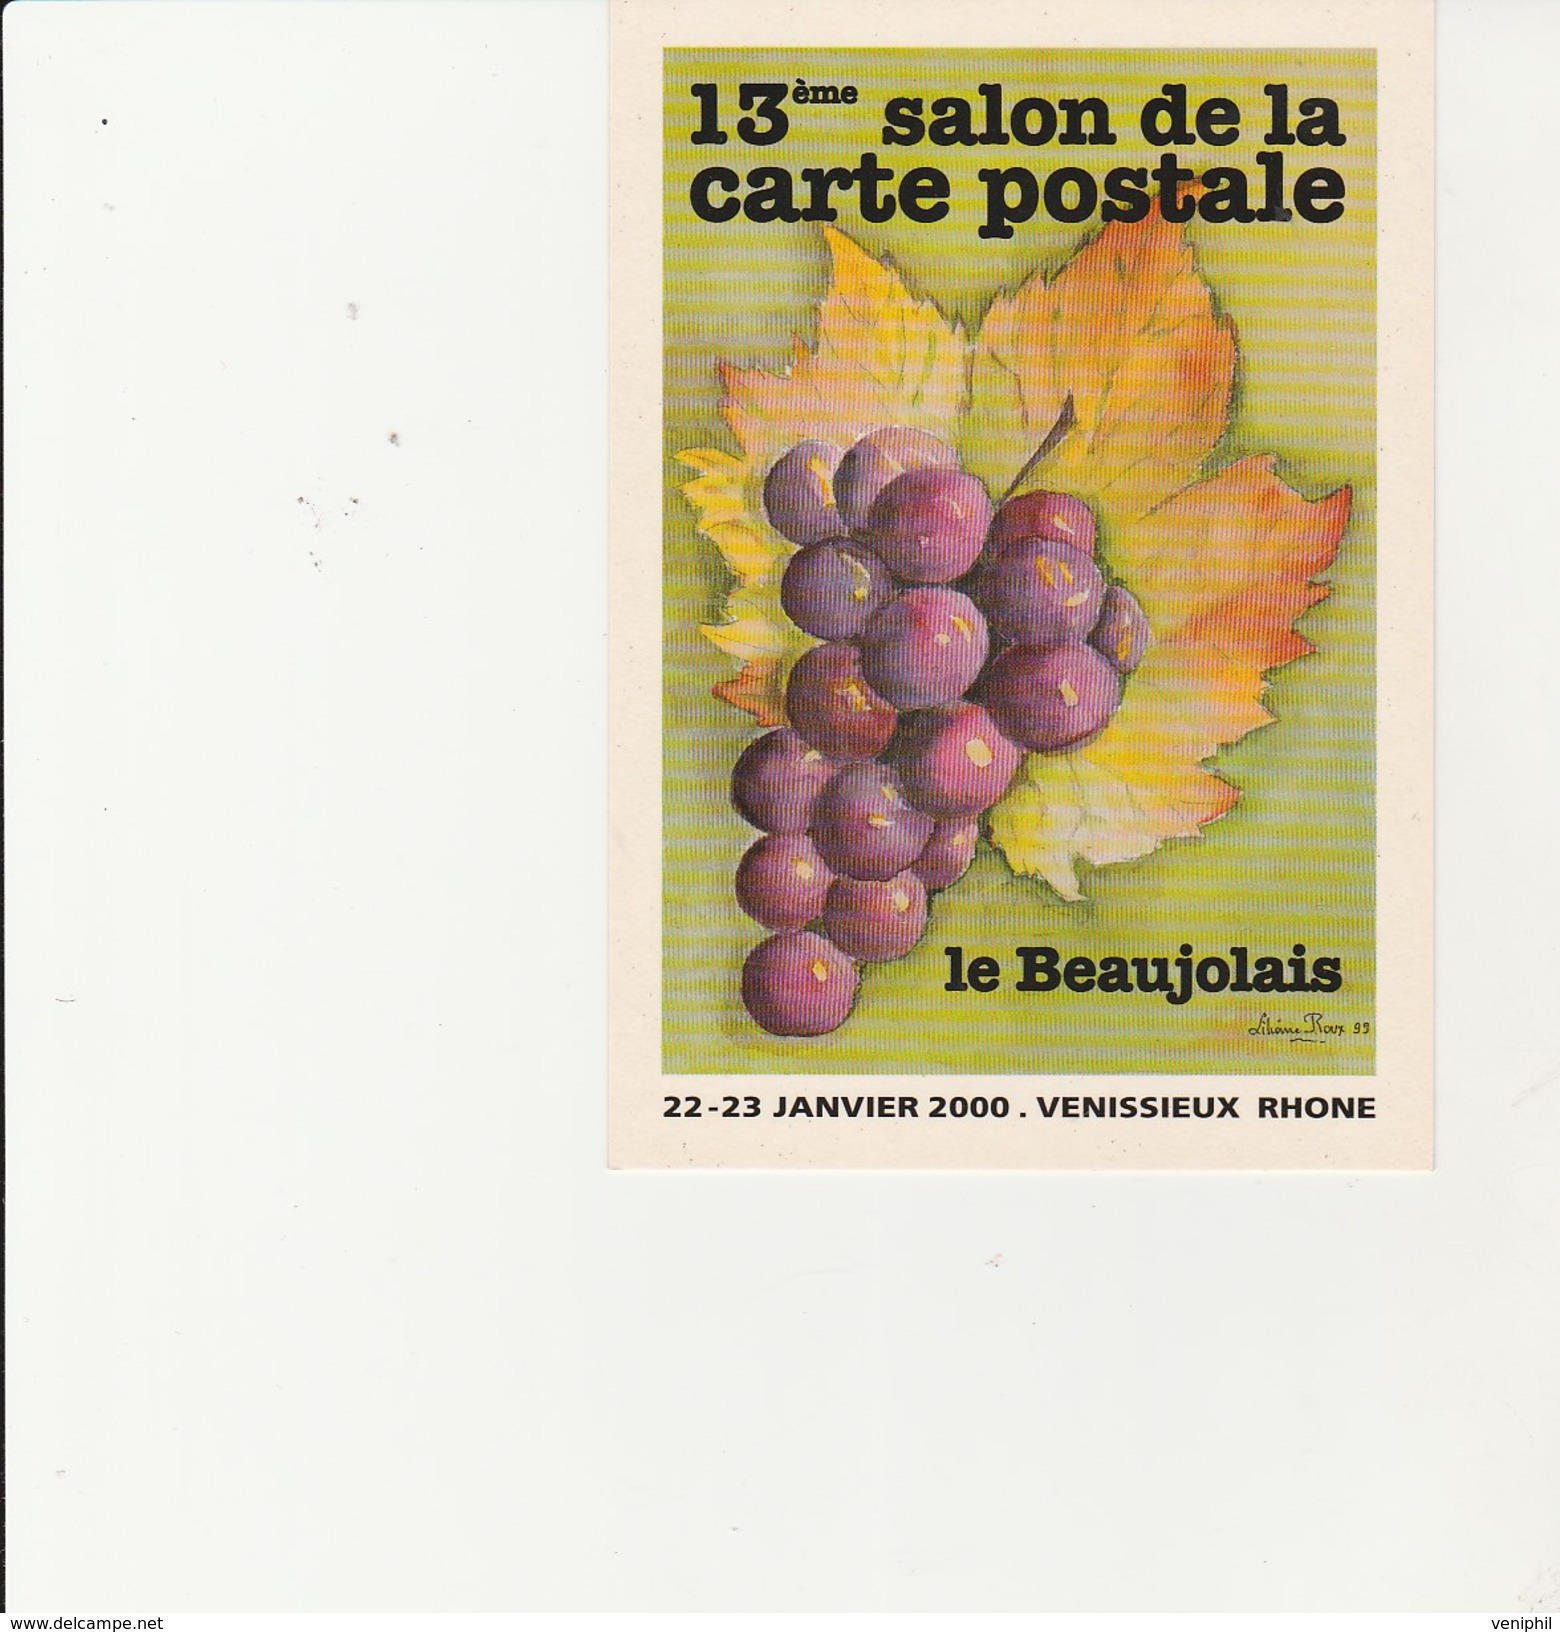 VENISSIEUX - 13 EME SALON DE LA CARTE POSTALE  -22-23 JANV 2000 - THEME / LE BEAUJOLAIS -DESSIN DE LILIANE ROUX - Borse E Saloni Del Collezionismo